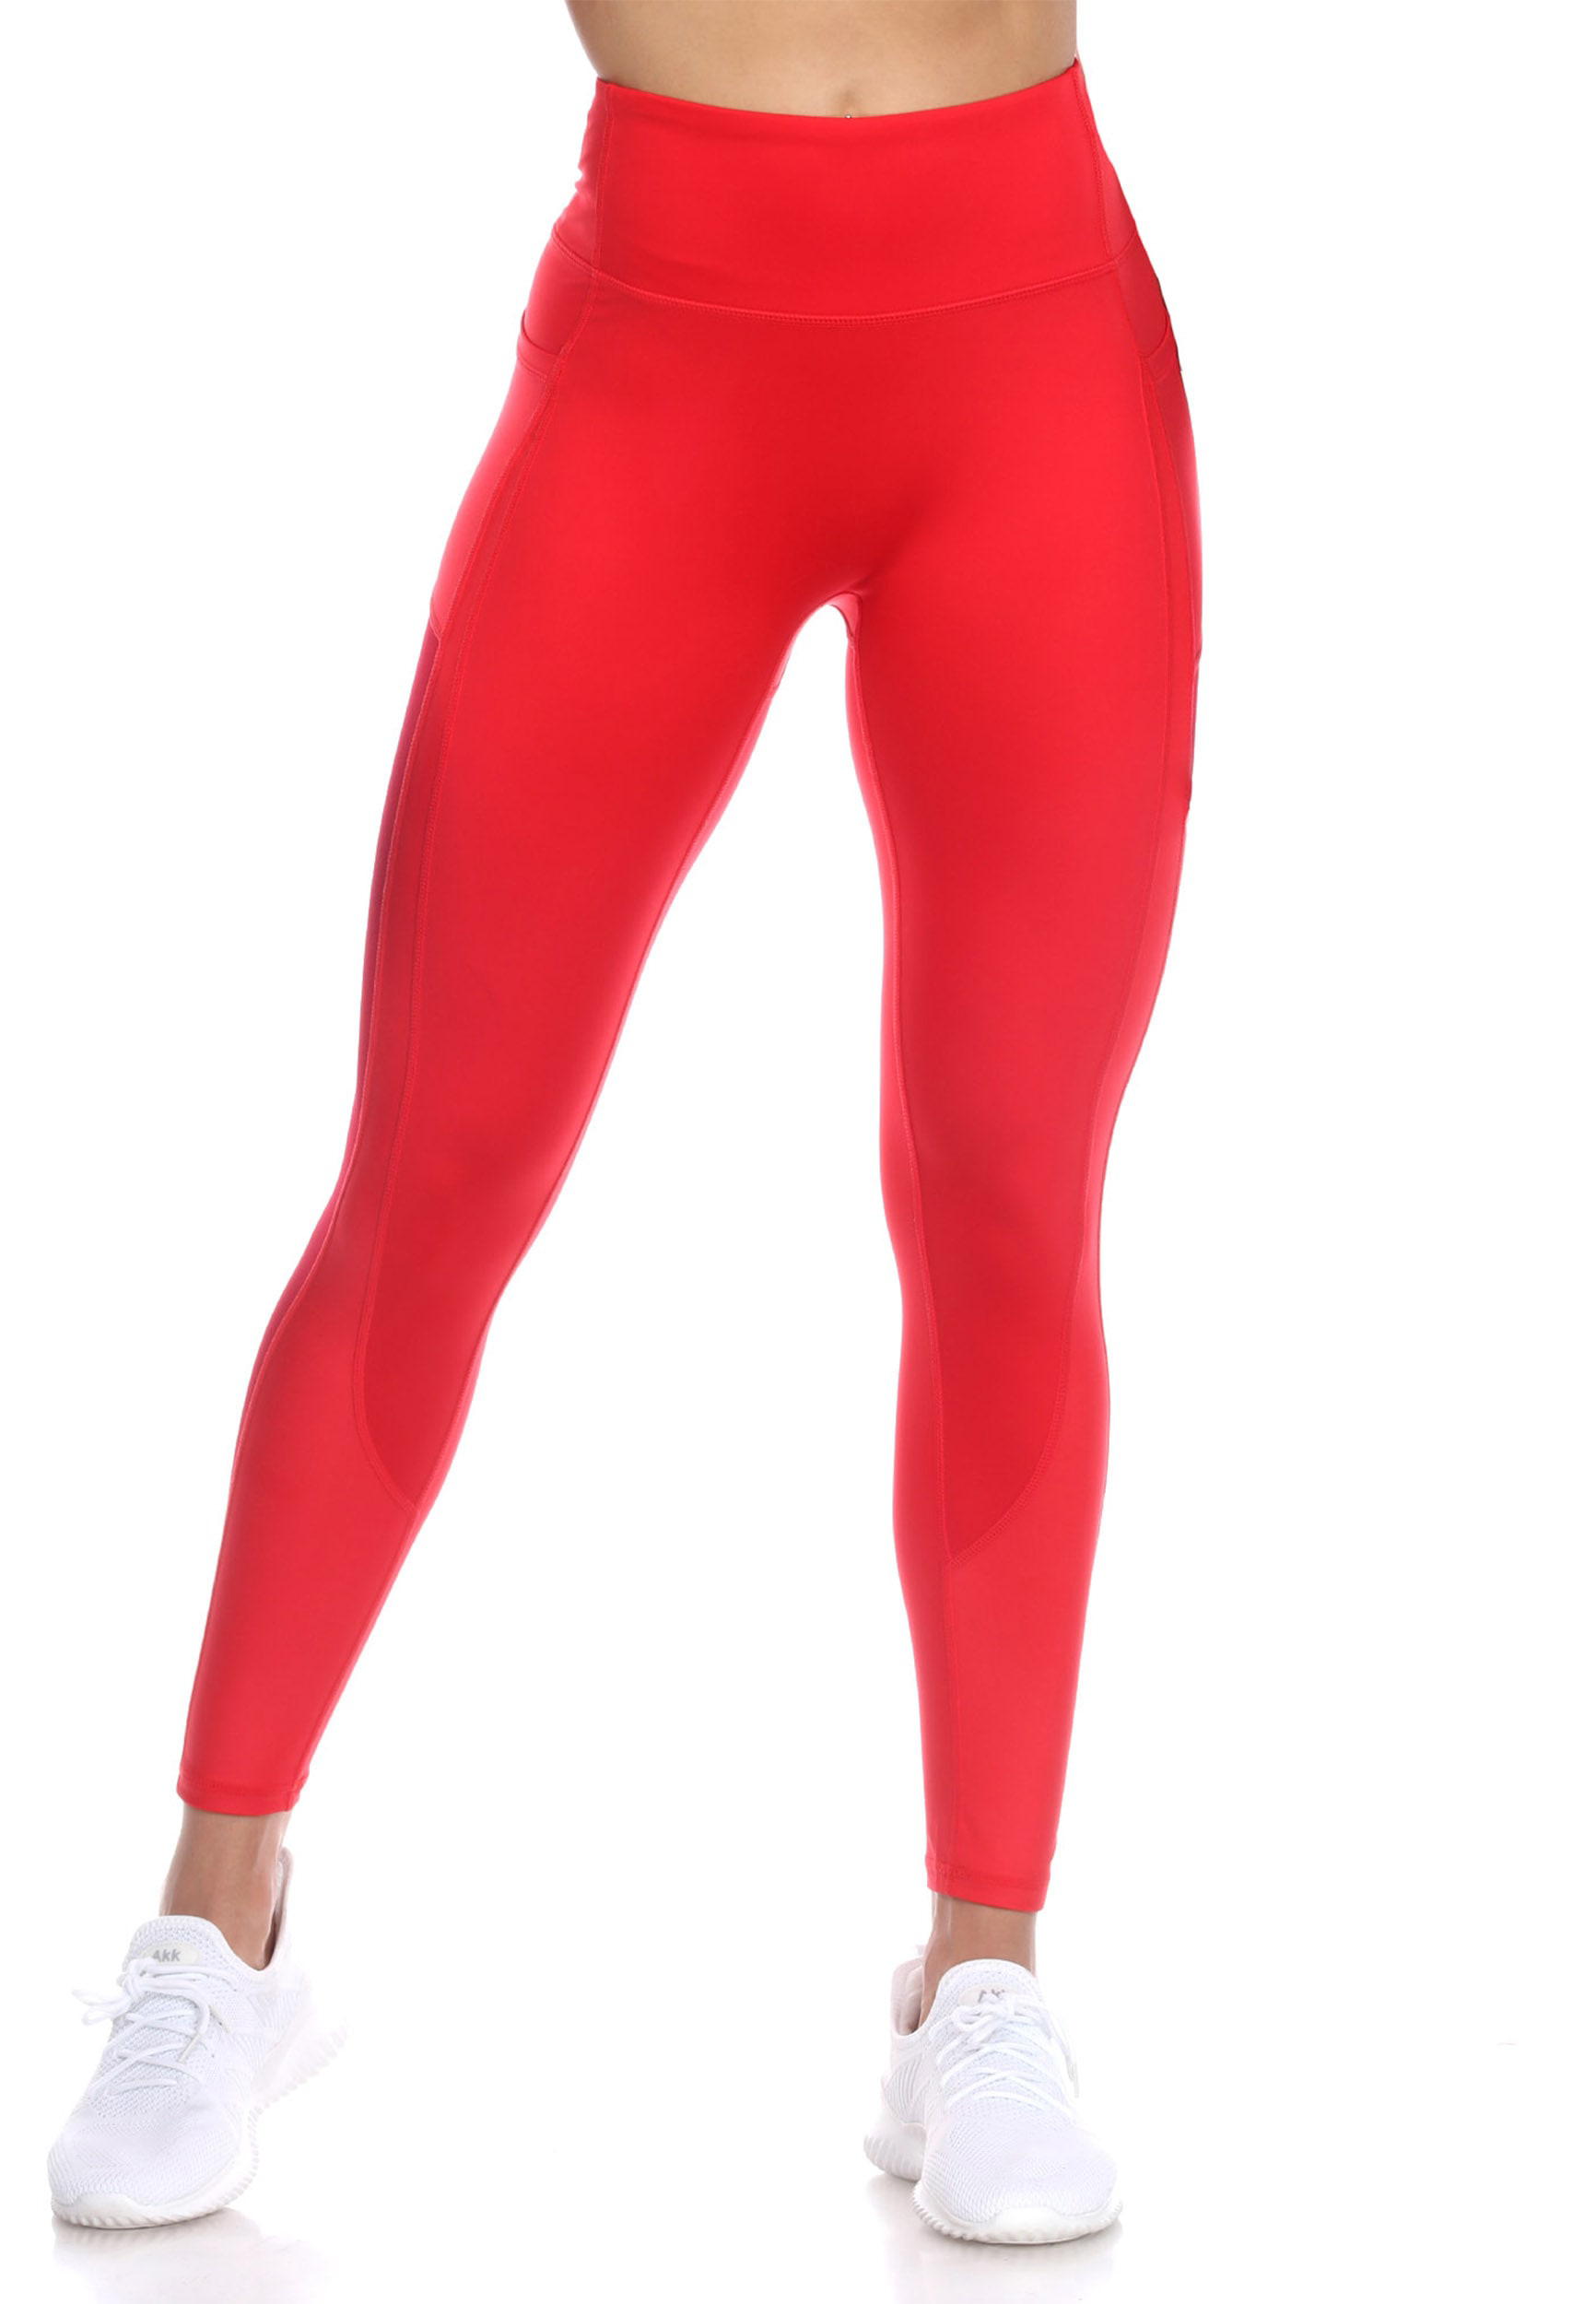 Red Leggings & Yoga Pants